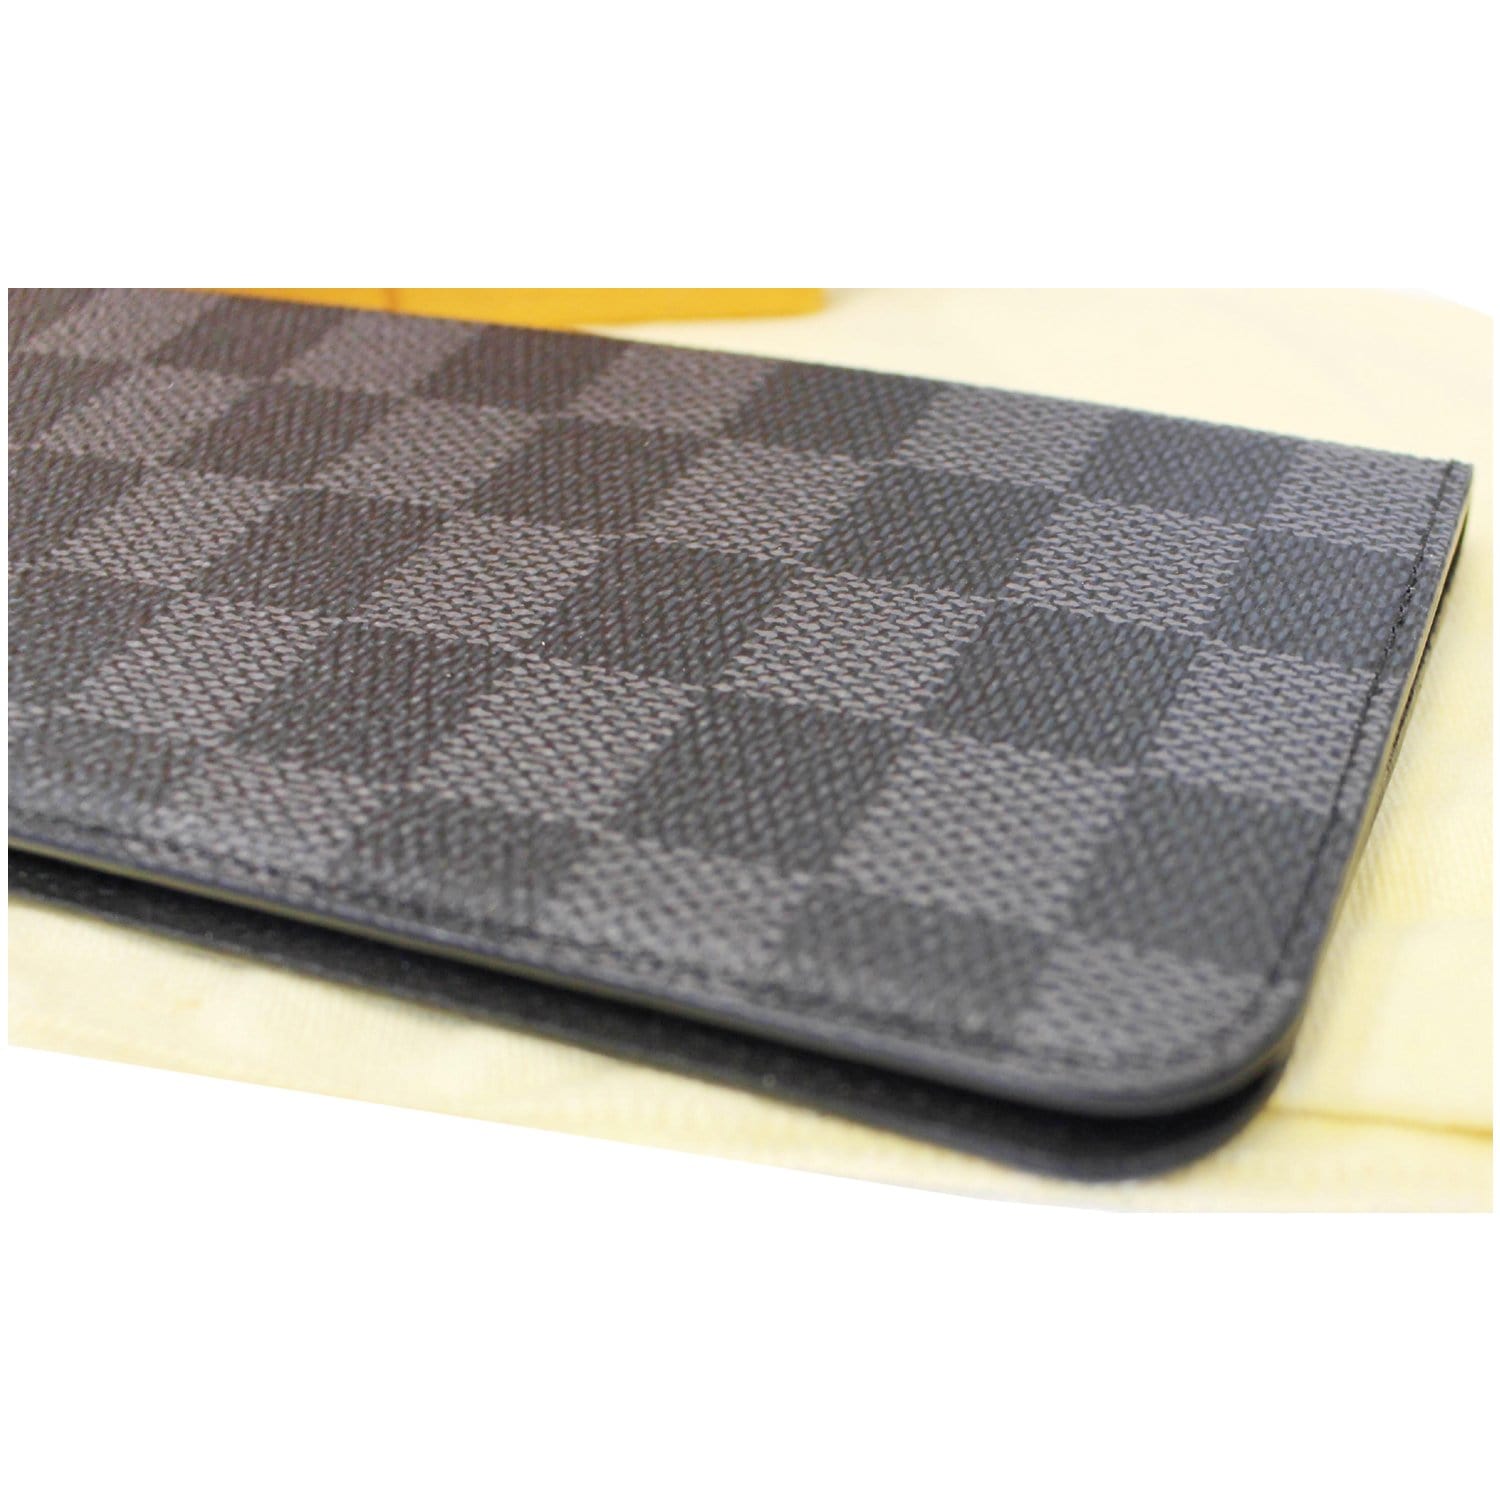 Louis Vuitton Folio Case iPhone 7/8 Plus Damier Graphite Black